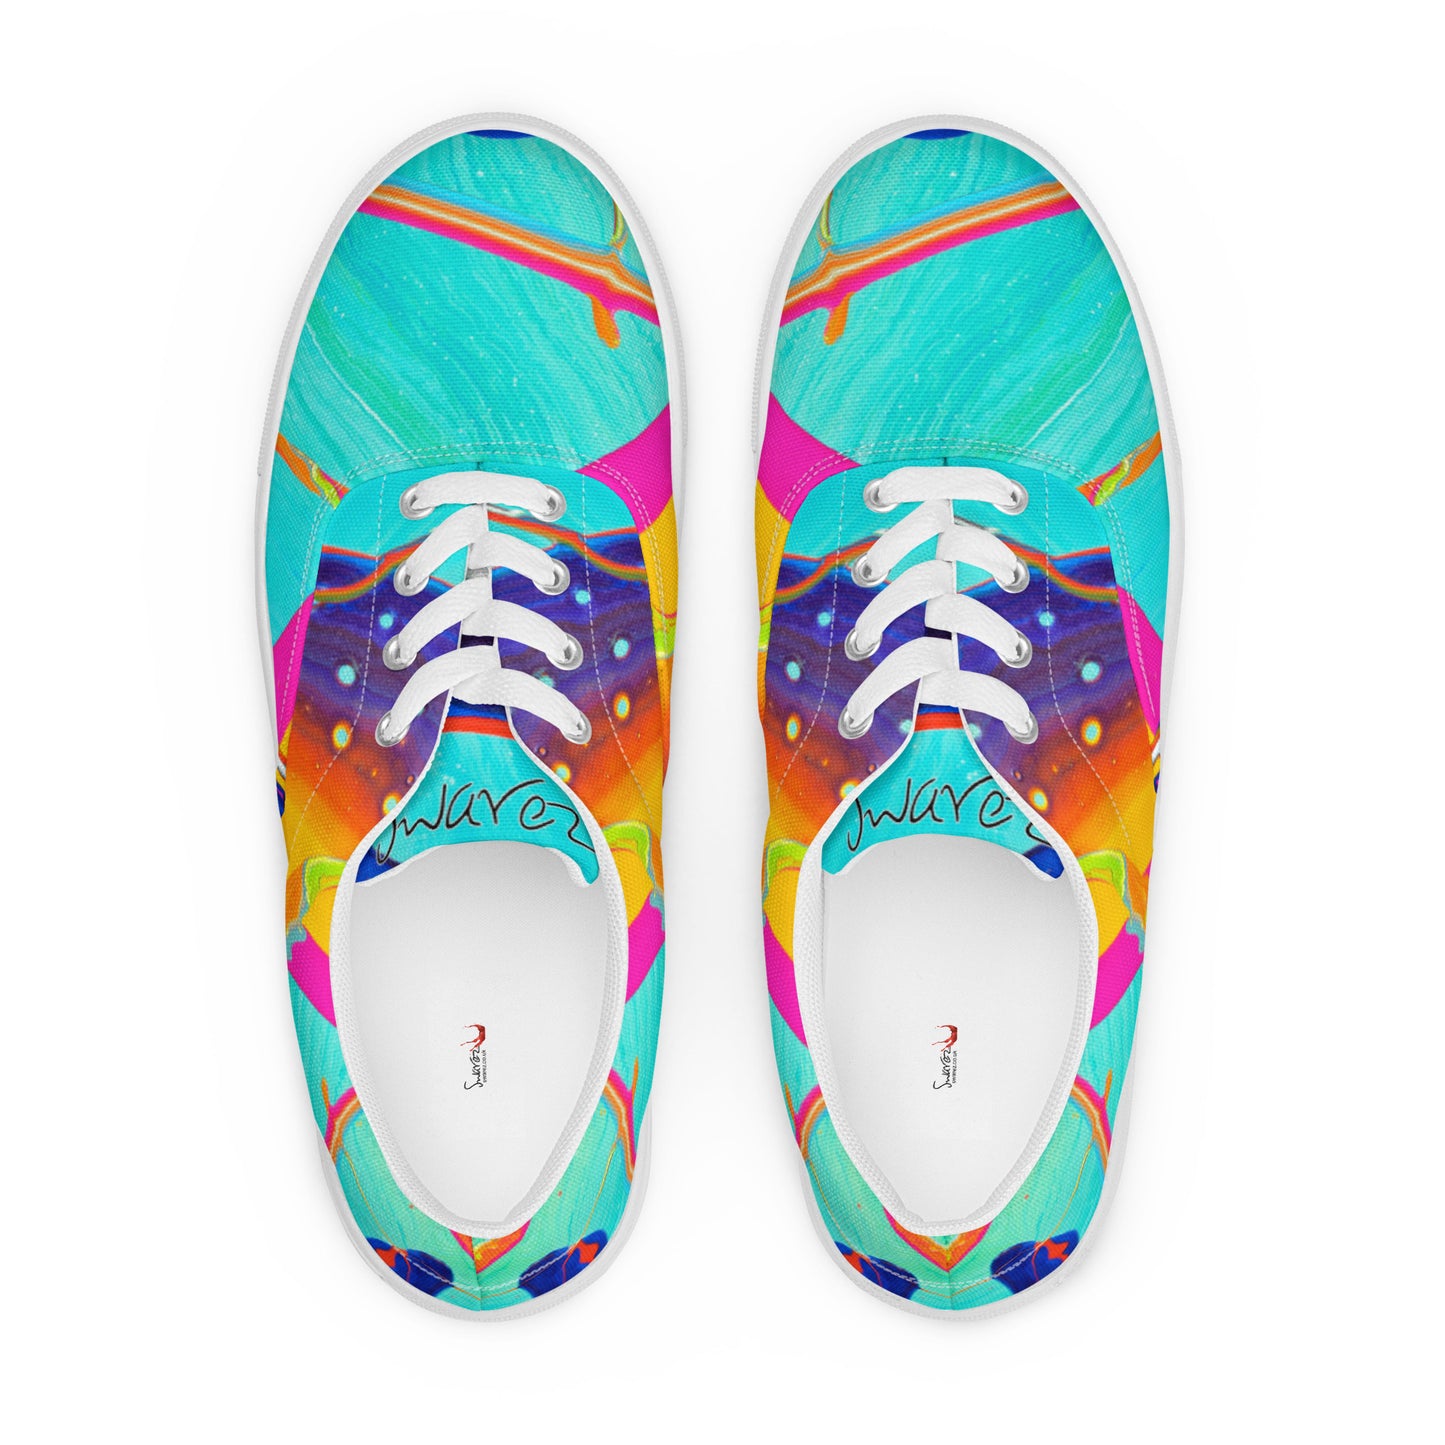 Women’s lace-up canvas shoes - Rainbow design